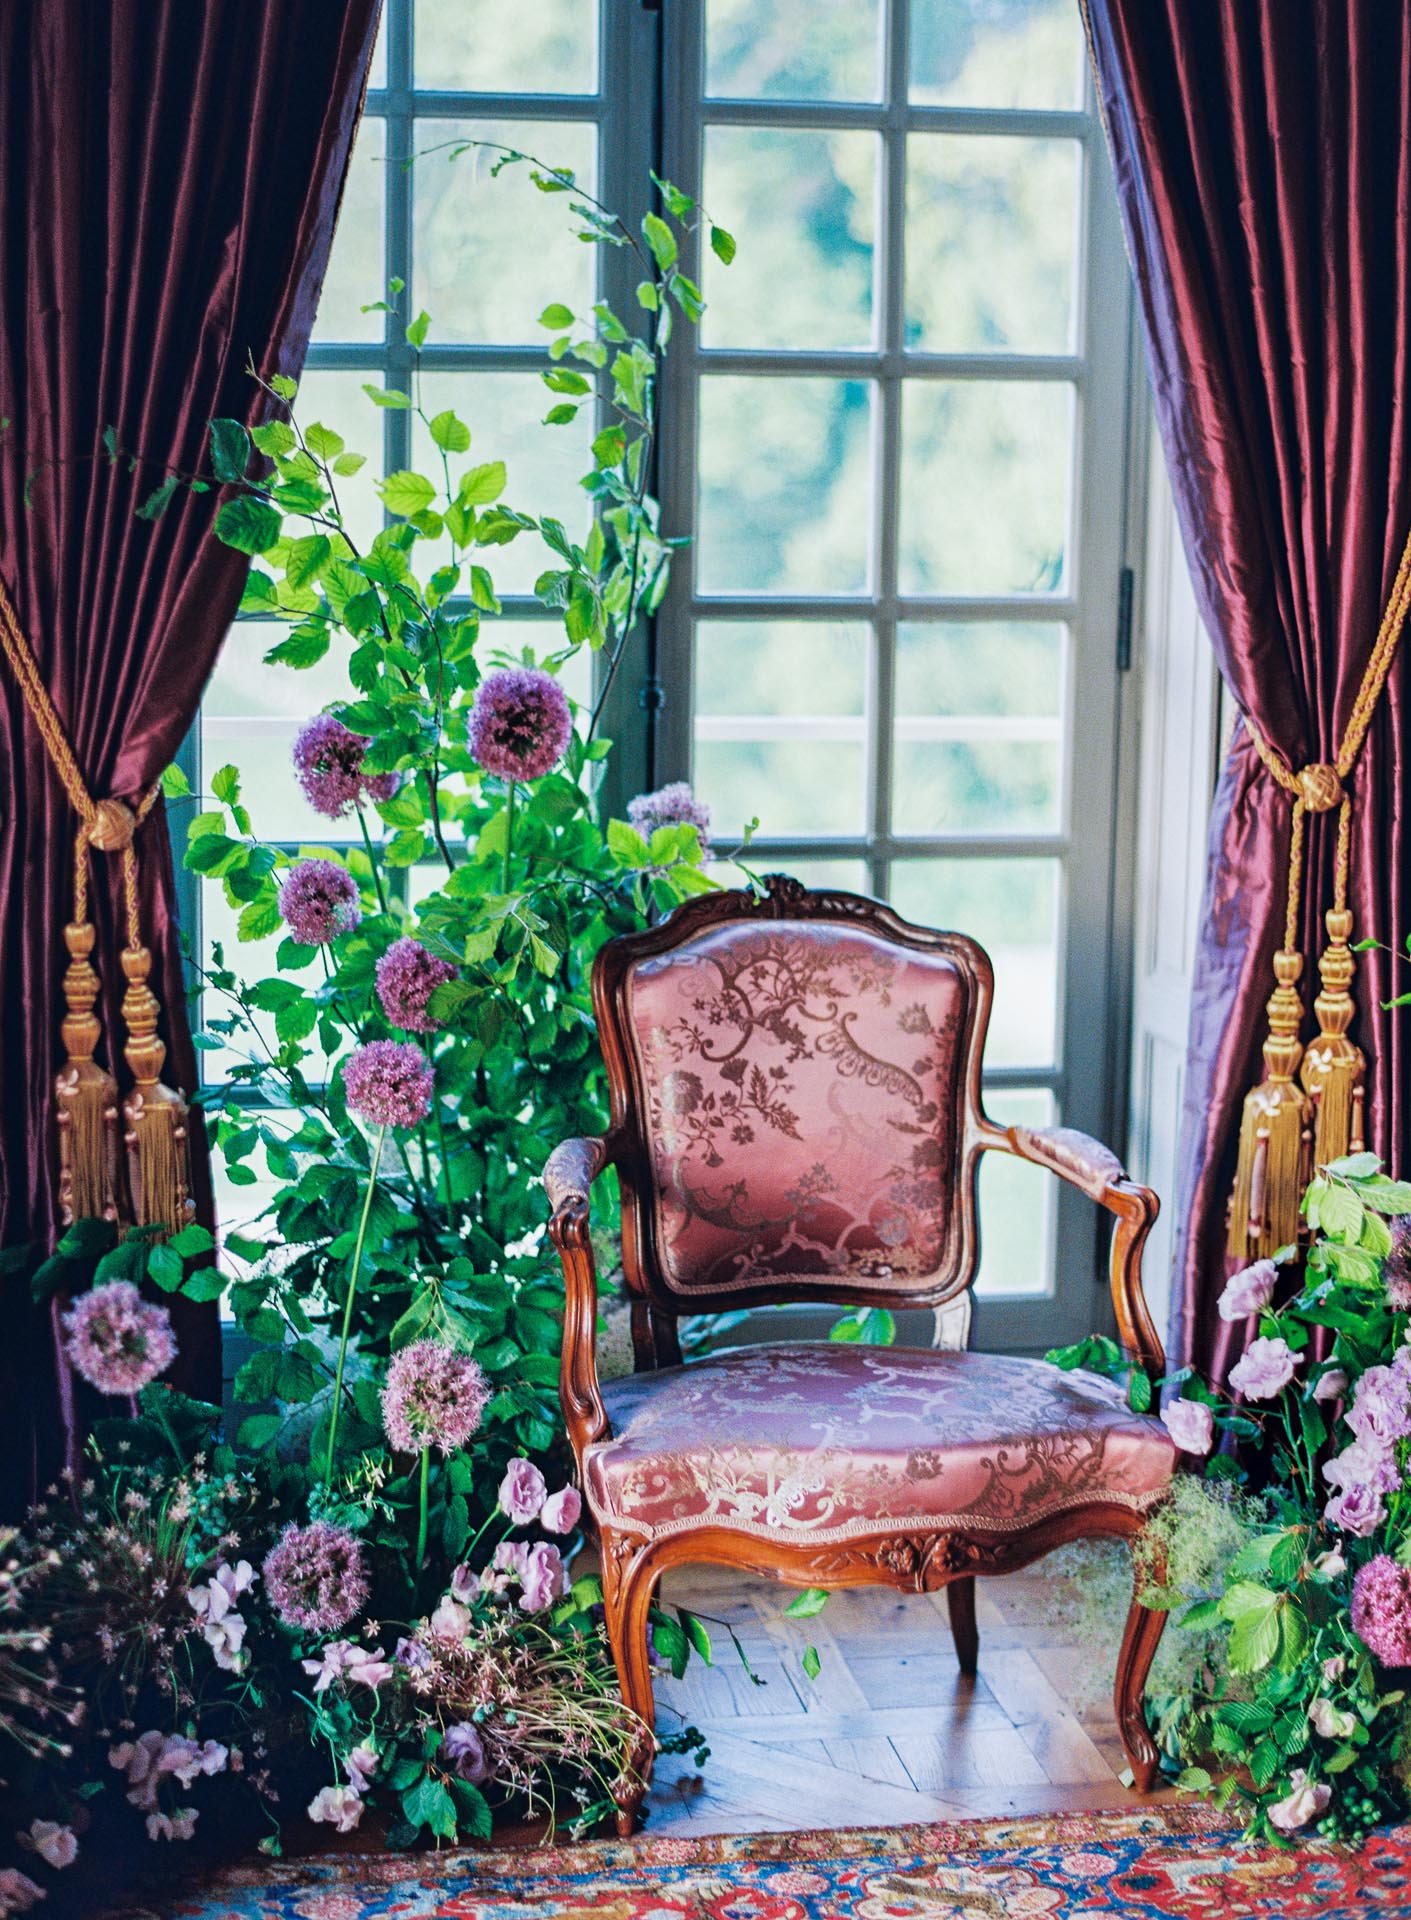 chateau de villette fashion inspiration styled shoot editorial luxury venue france chateau purple suite florals alliums chair